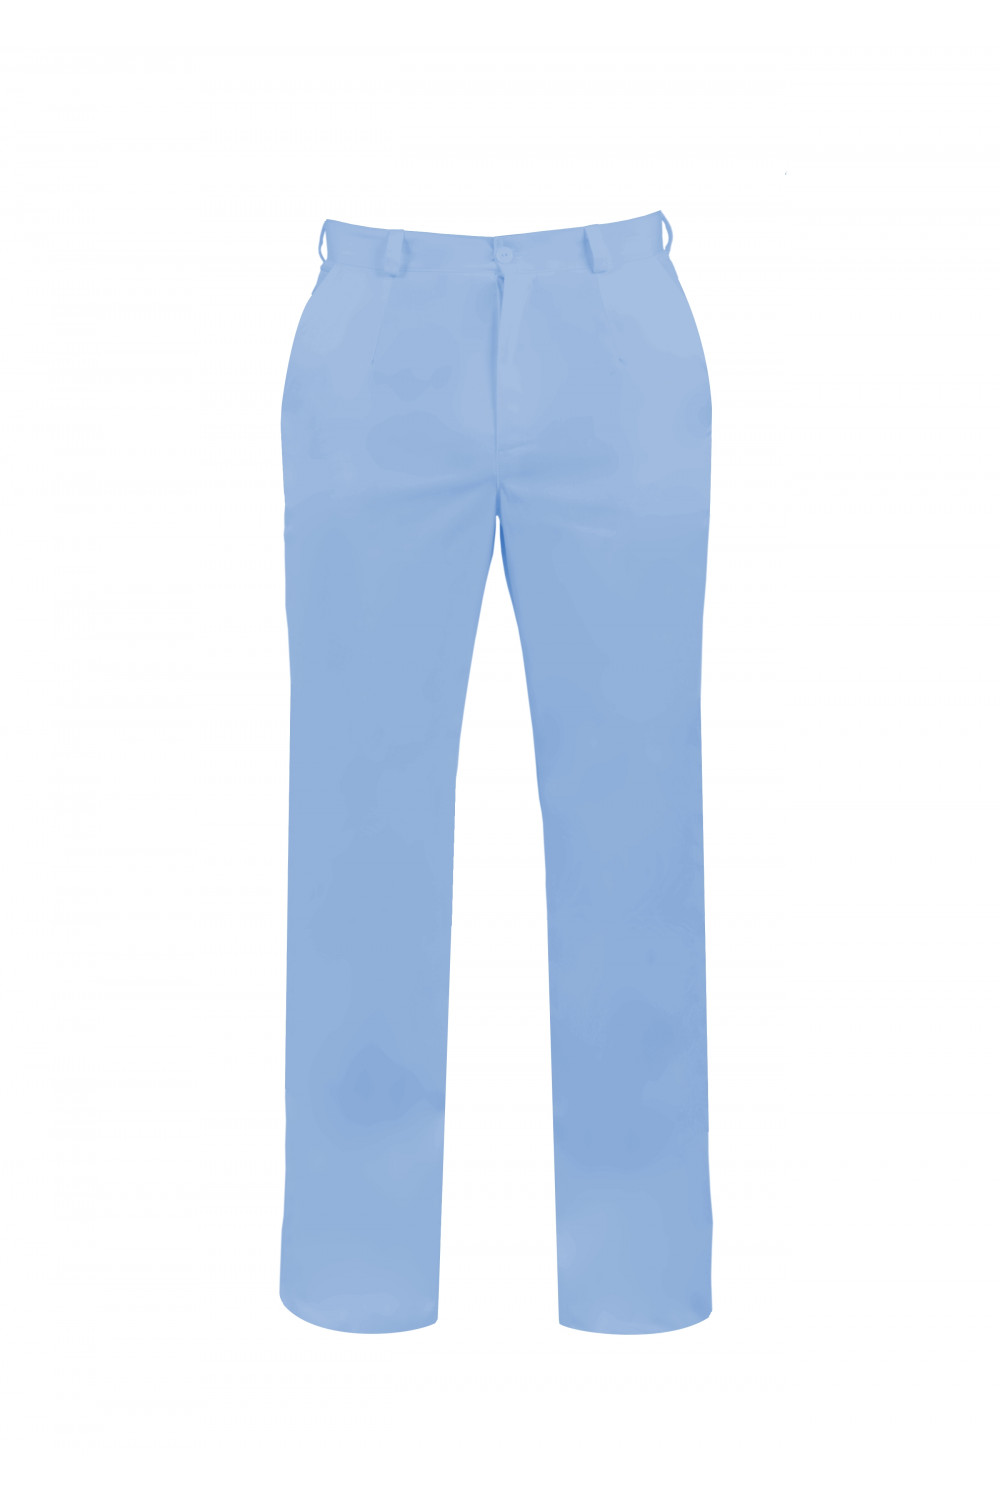 M-140 Spodnie męskie medyczne lekarskie ochronne kolor błękit